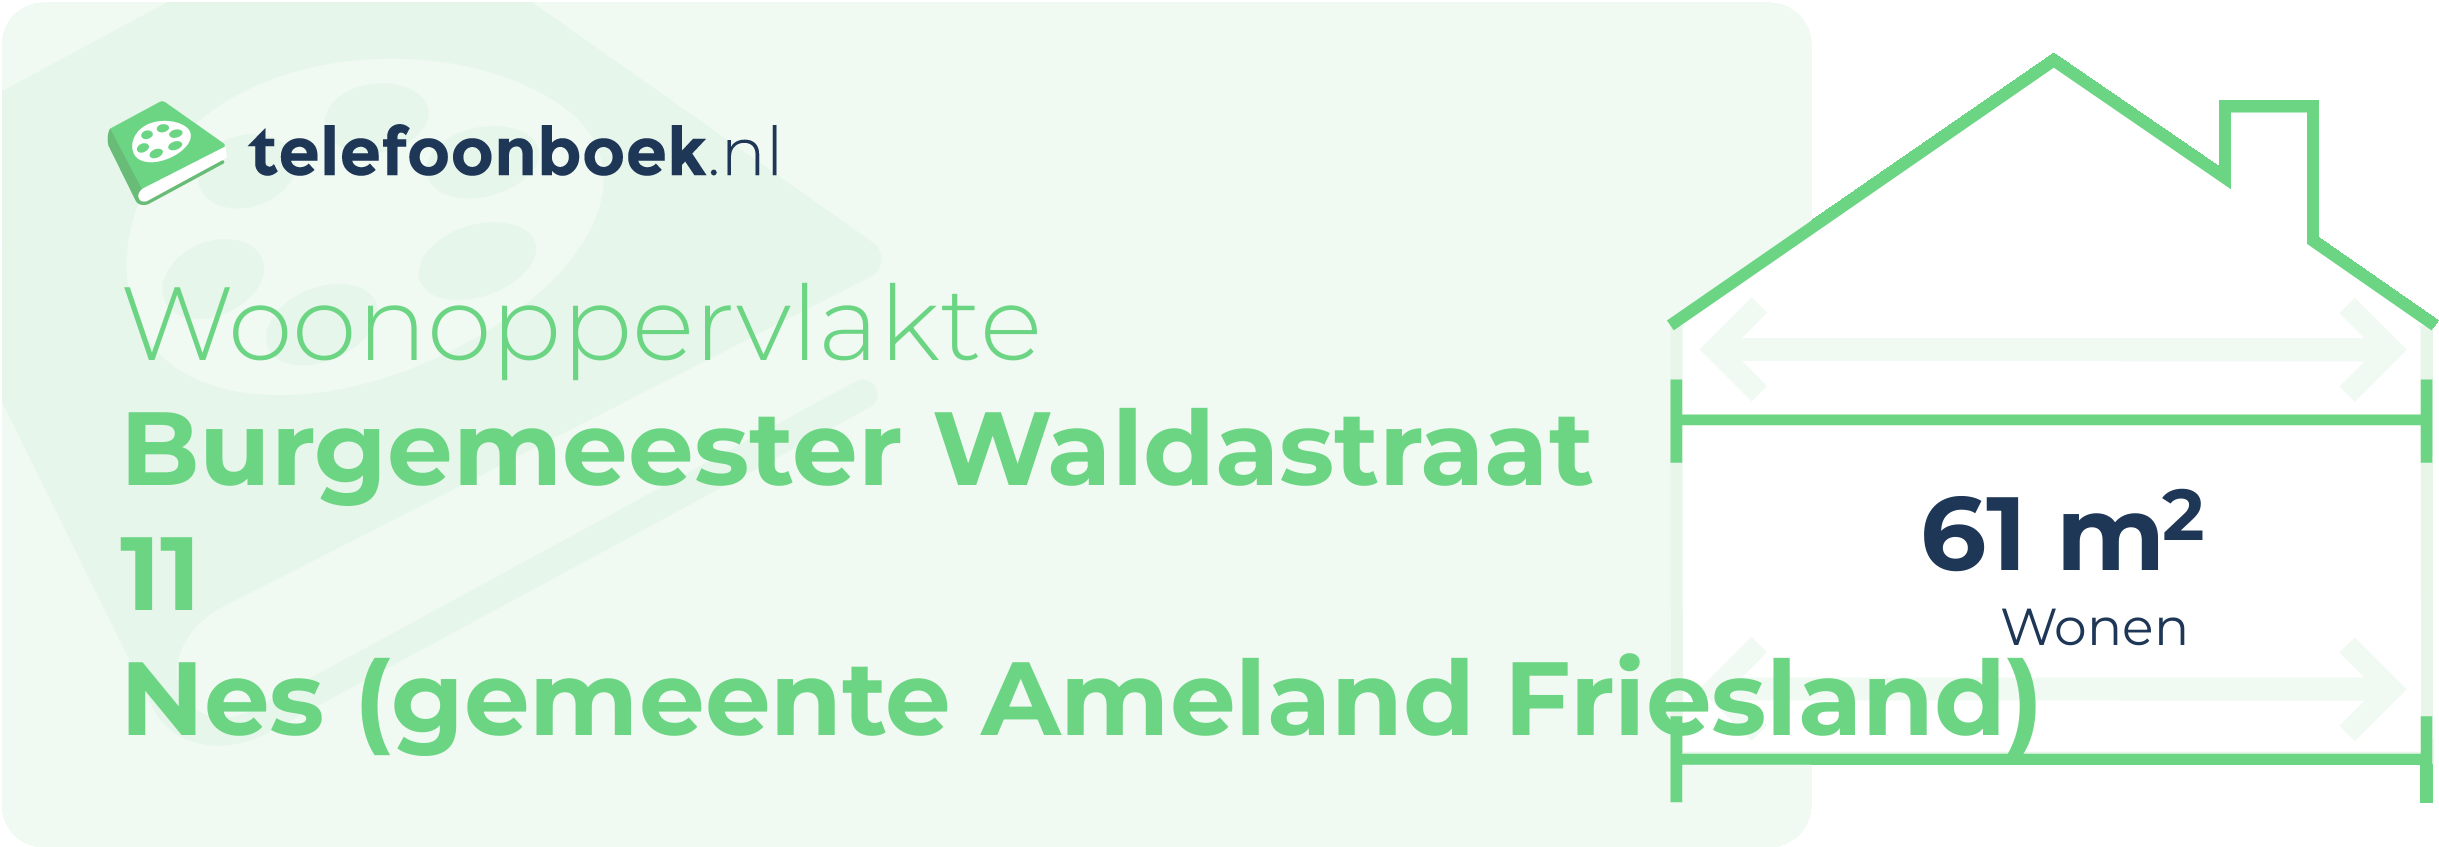 Woonoppervlakte Burgemeester Waldastraat 11 Nes (gemeente Ameland Friesland)